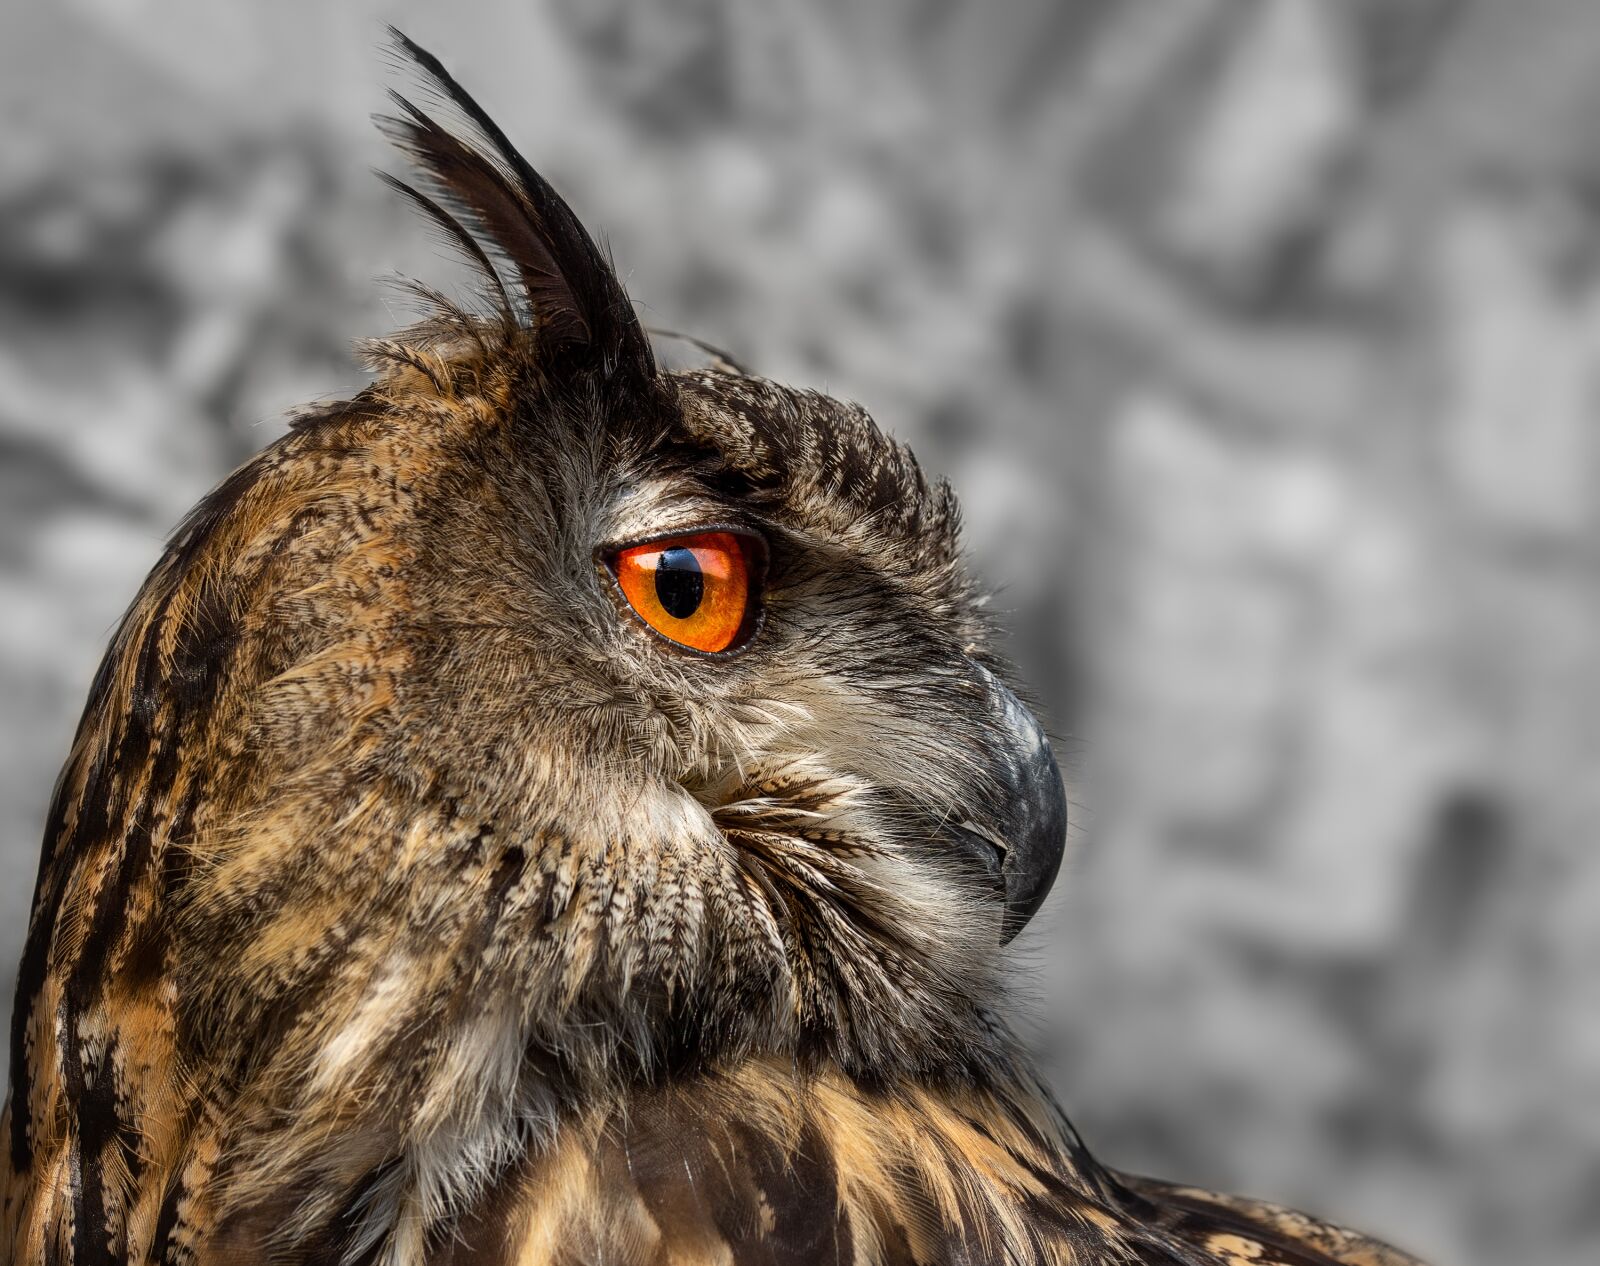 Sony SLT-A77 + 105mm F2.8 sample photo. Eagle owl, owl, bird photography